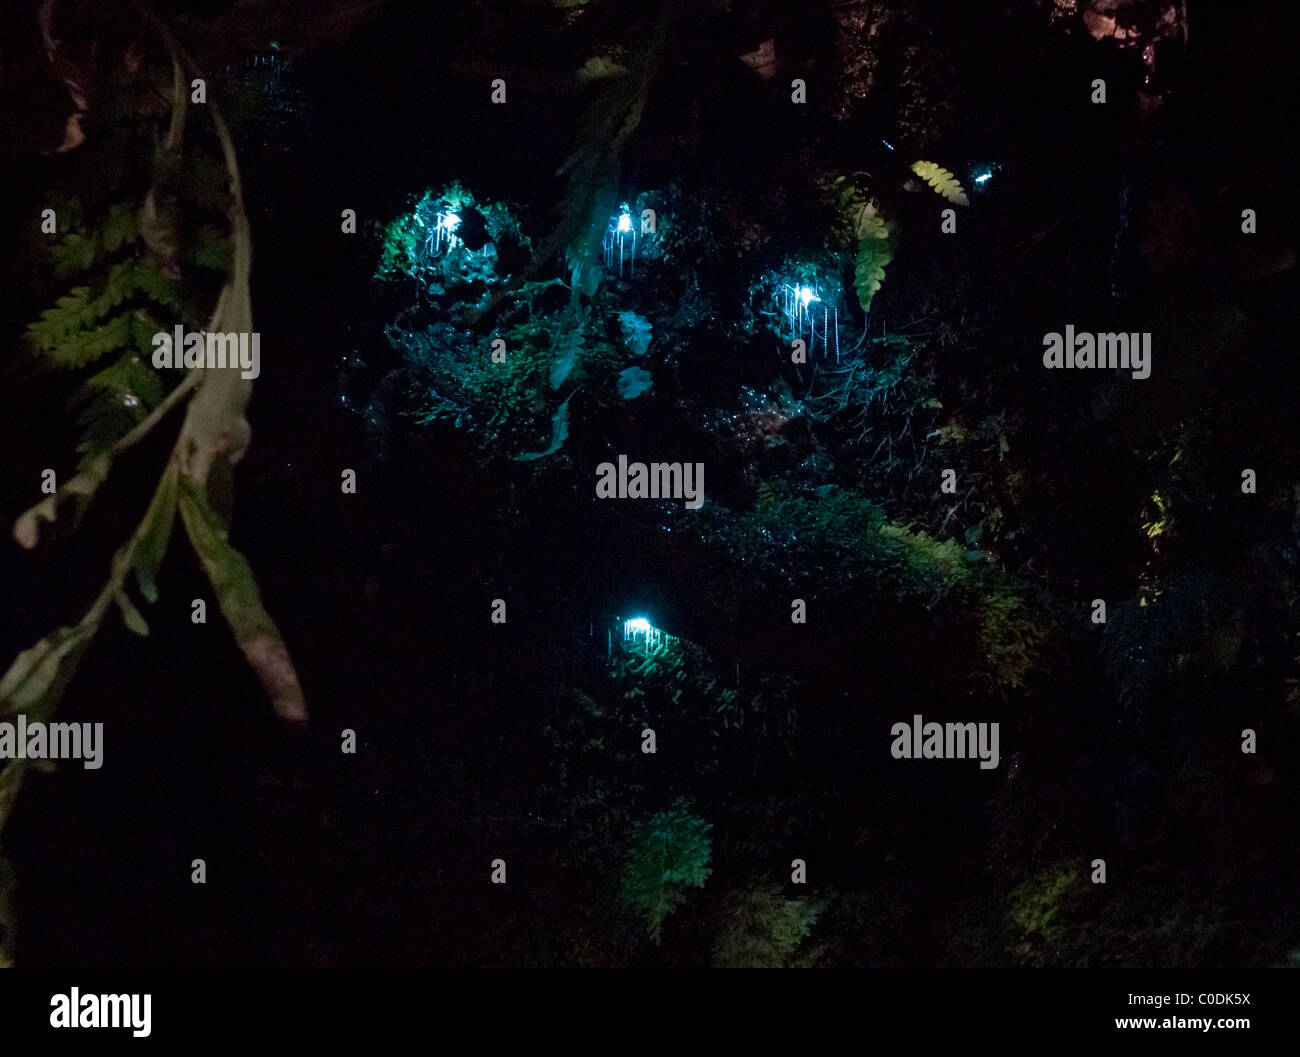 La nouvelle zelande glow-worms (Arachnocampa luminosa), larves luminescentes du champignon gnat, avec son filet de fils de soie collante. Banque D'Images